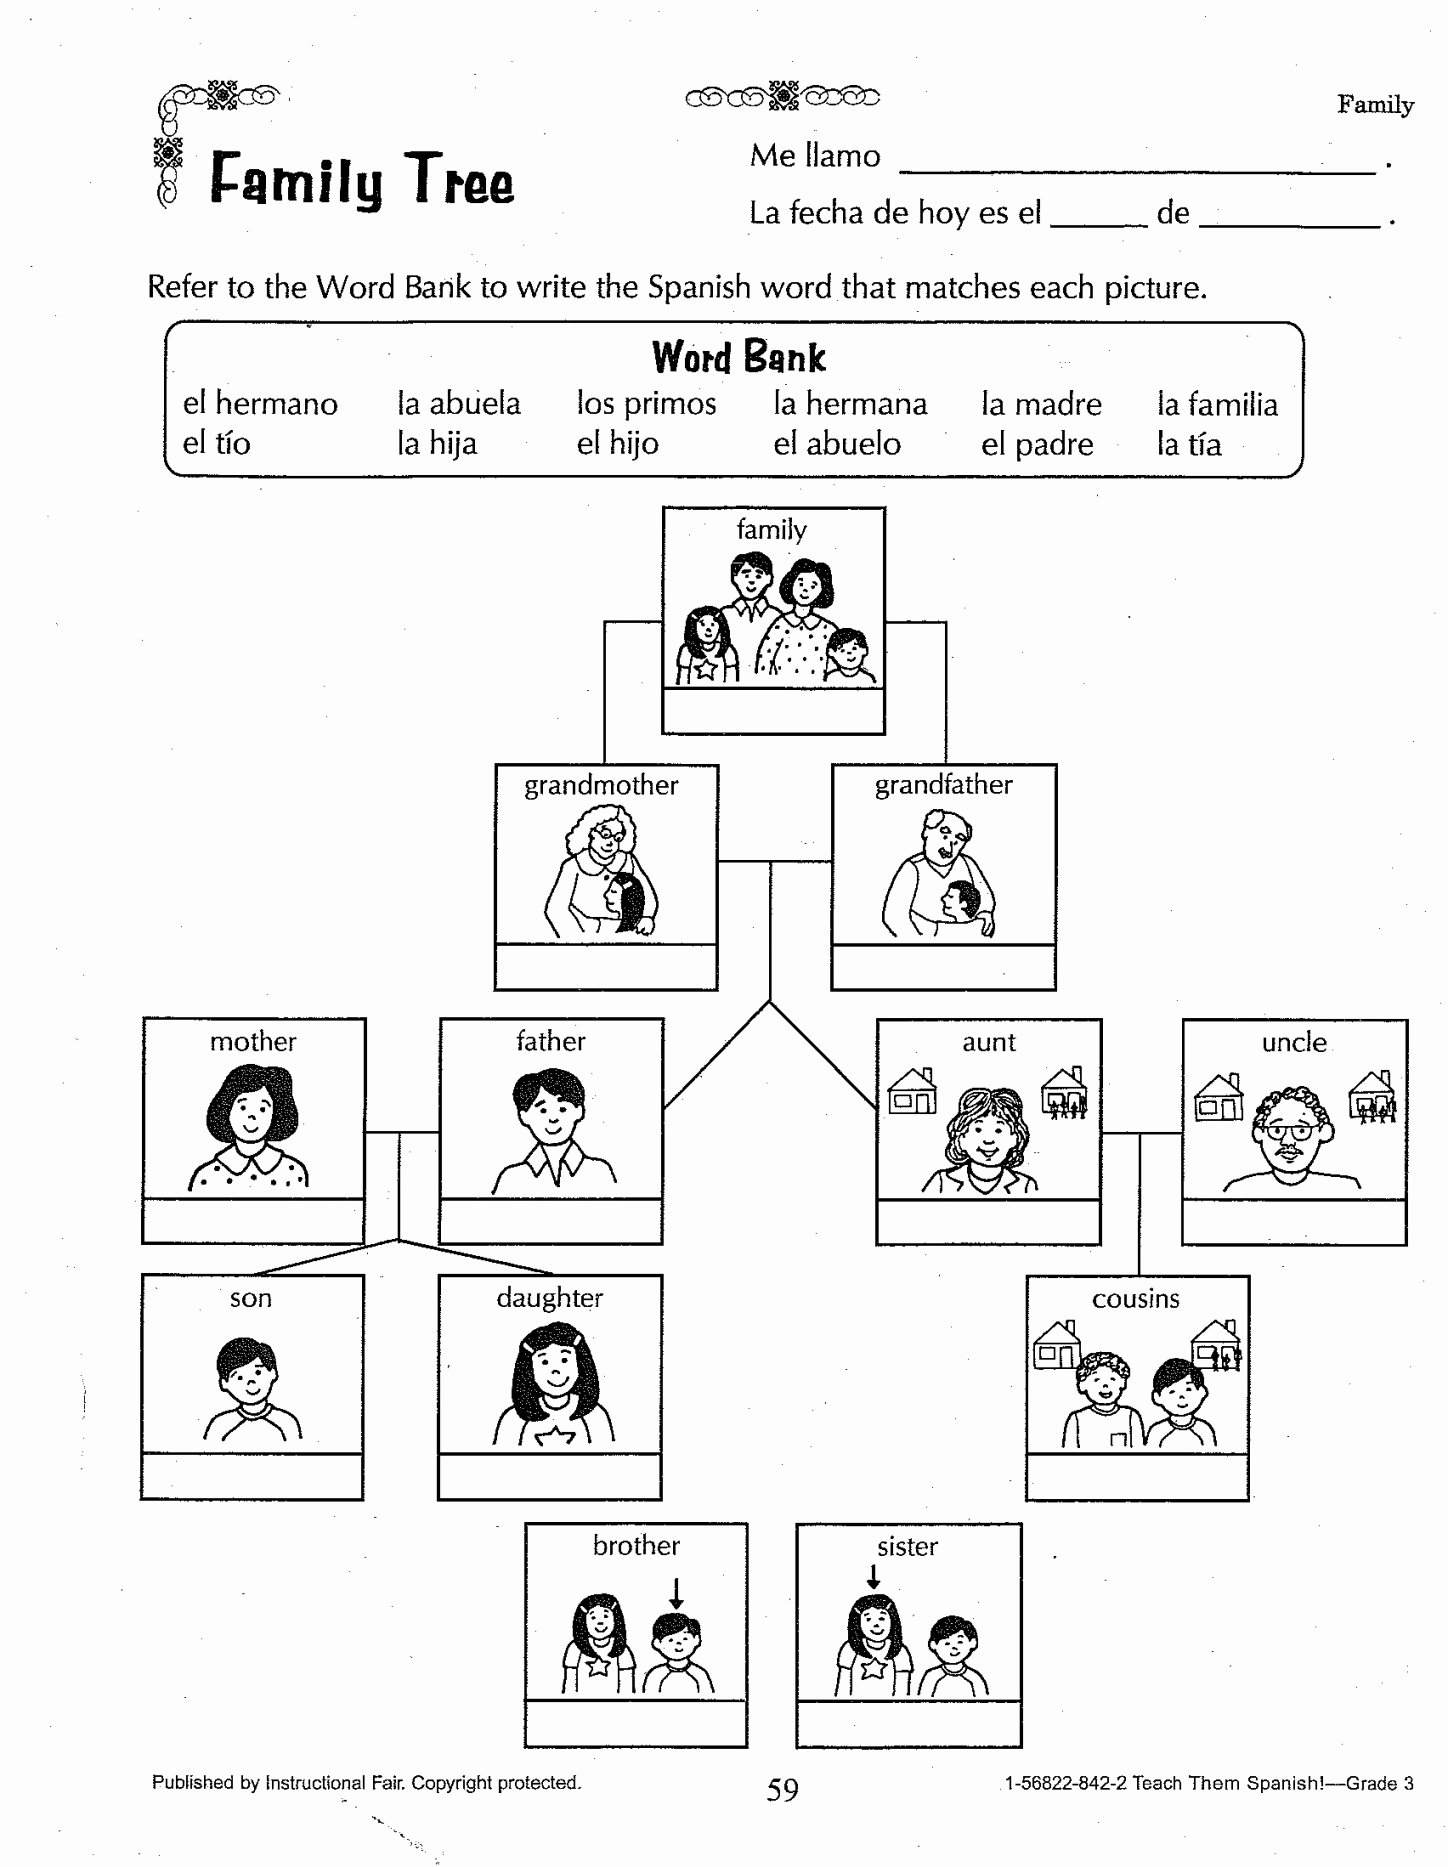 Family Tree Worksheet Printable Best Of Family Tree Worksheet Printable